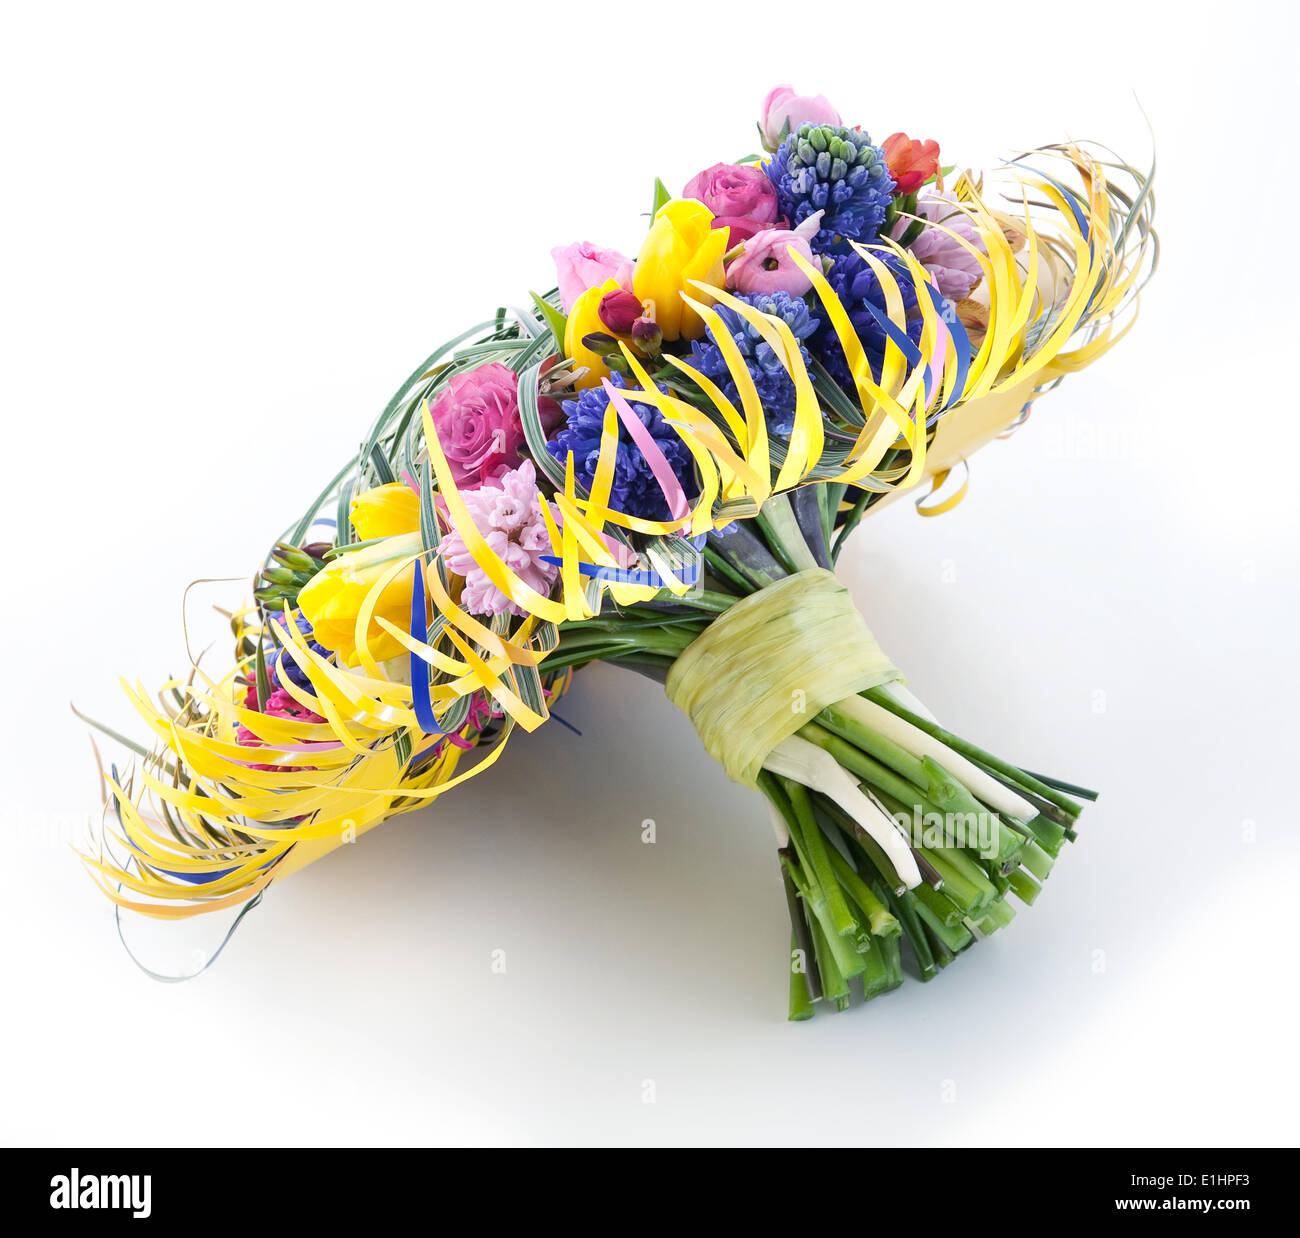 Compleanno - bouquet fresco giardino di fiori colorati su sfondo bianco Foto Stock